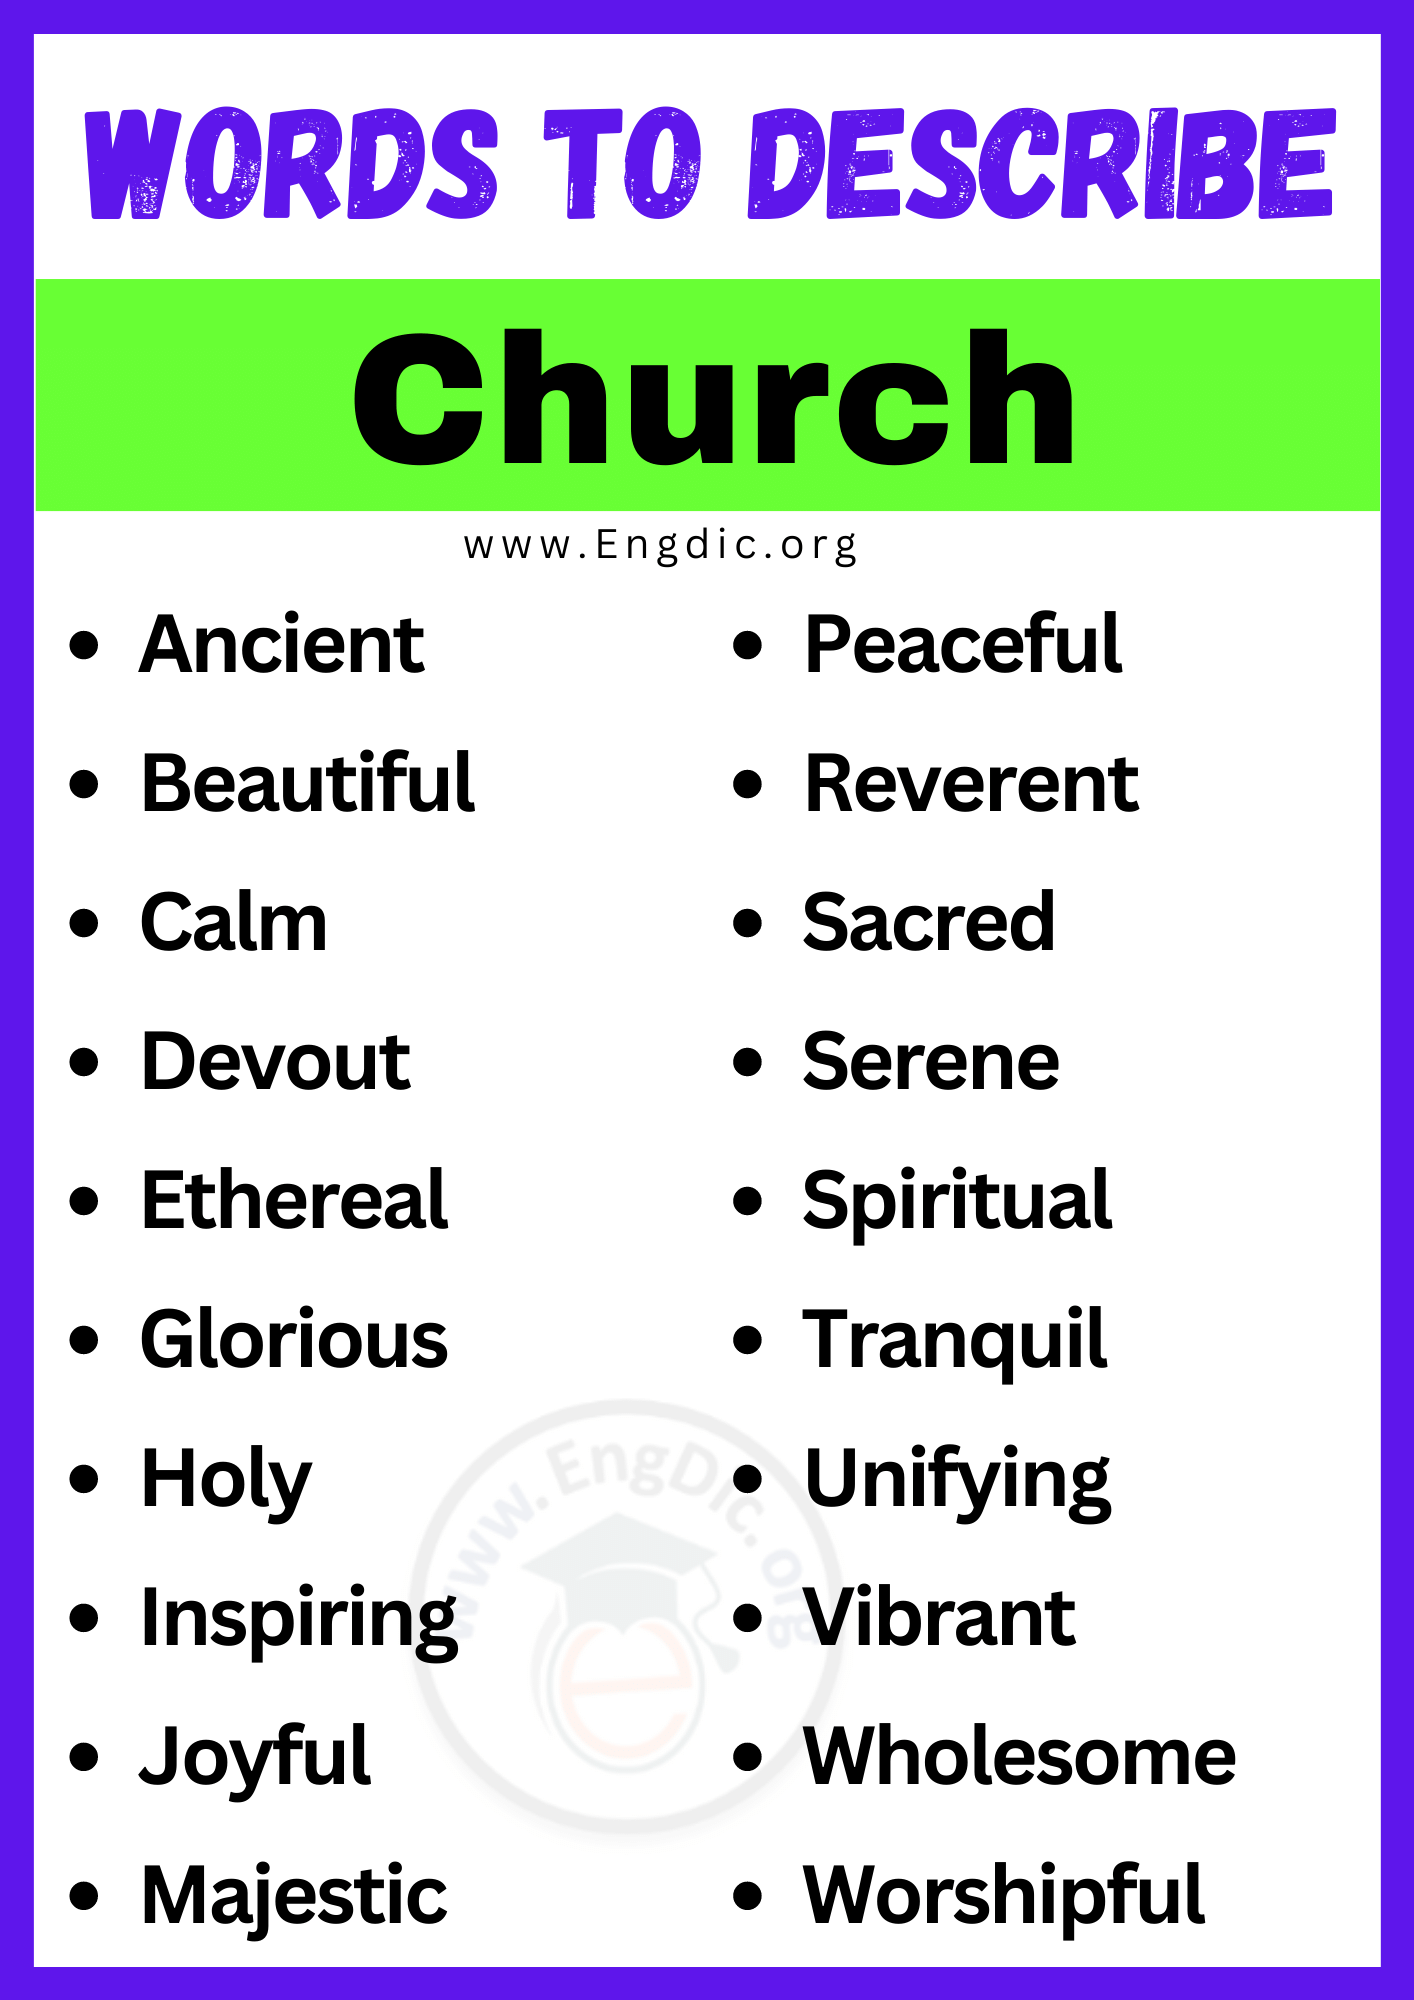 Words to Describe Church